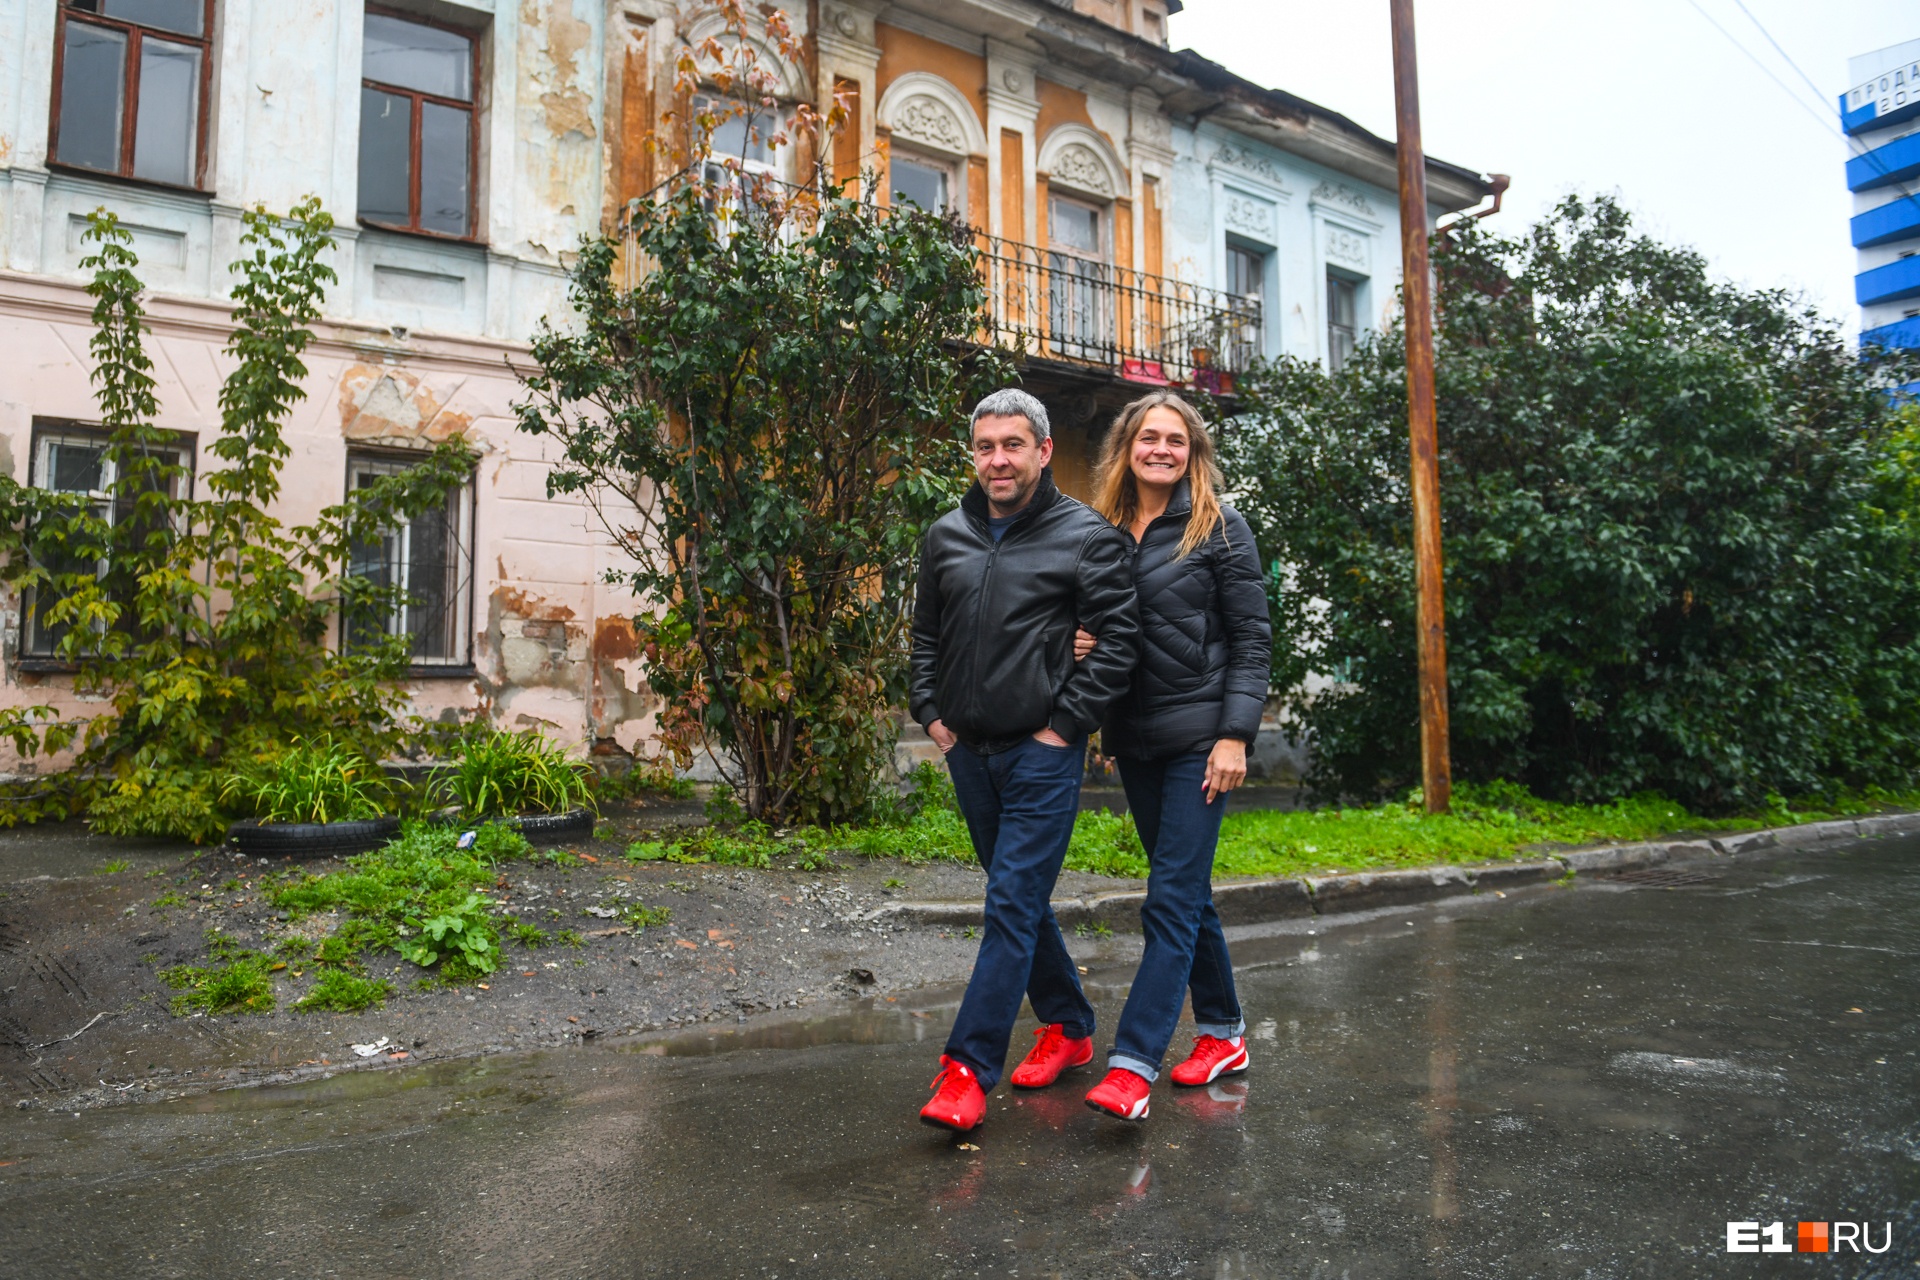 Андрей и Светлана готовы бороться за то, чтобы превратить дом в музей